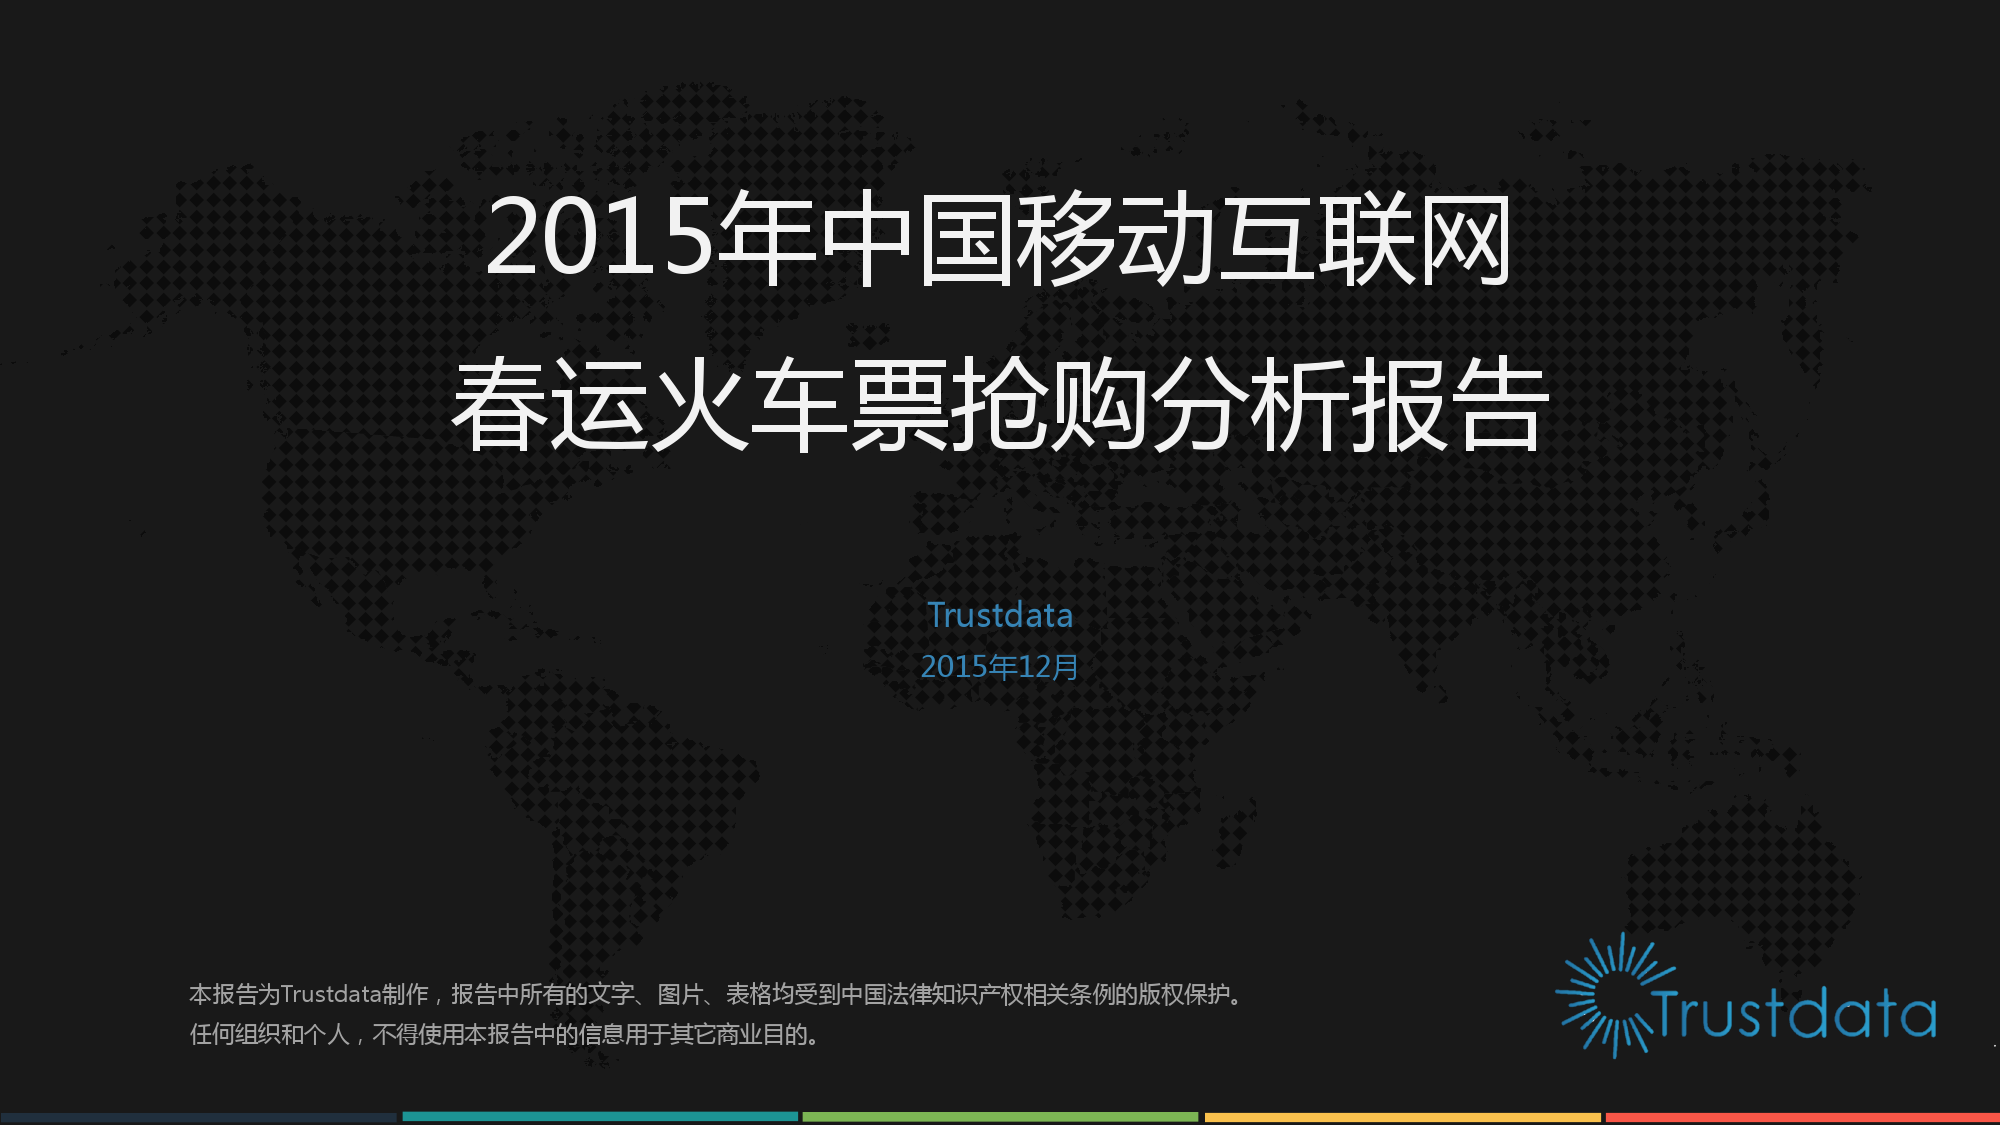 2015年中国移动互联网春运火车票抢购分析报告_000001